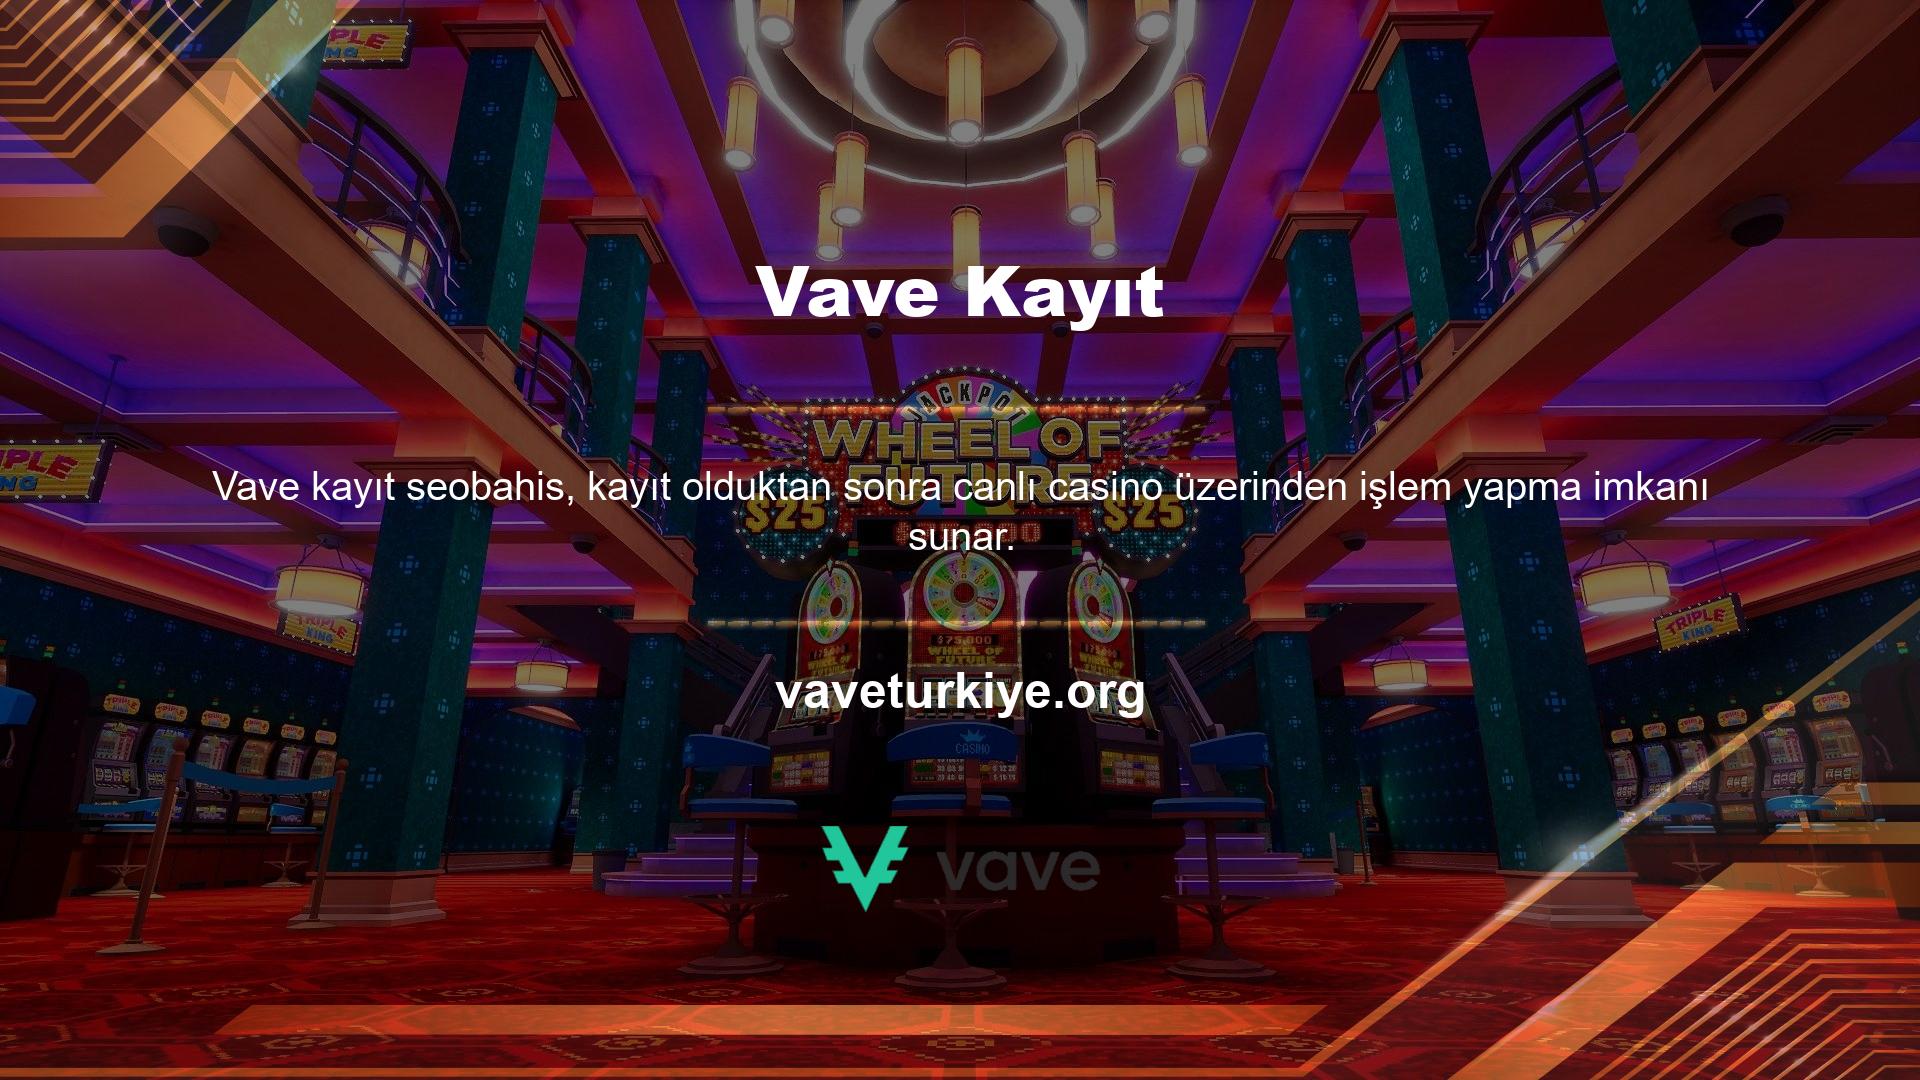 Vave Poker uygulaması sitedeki bahis seçeneklerinden biri olup çok para kazanmanıza yardımcı olan bir bahis platformudur